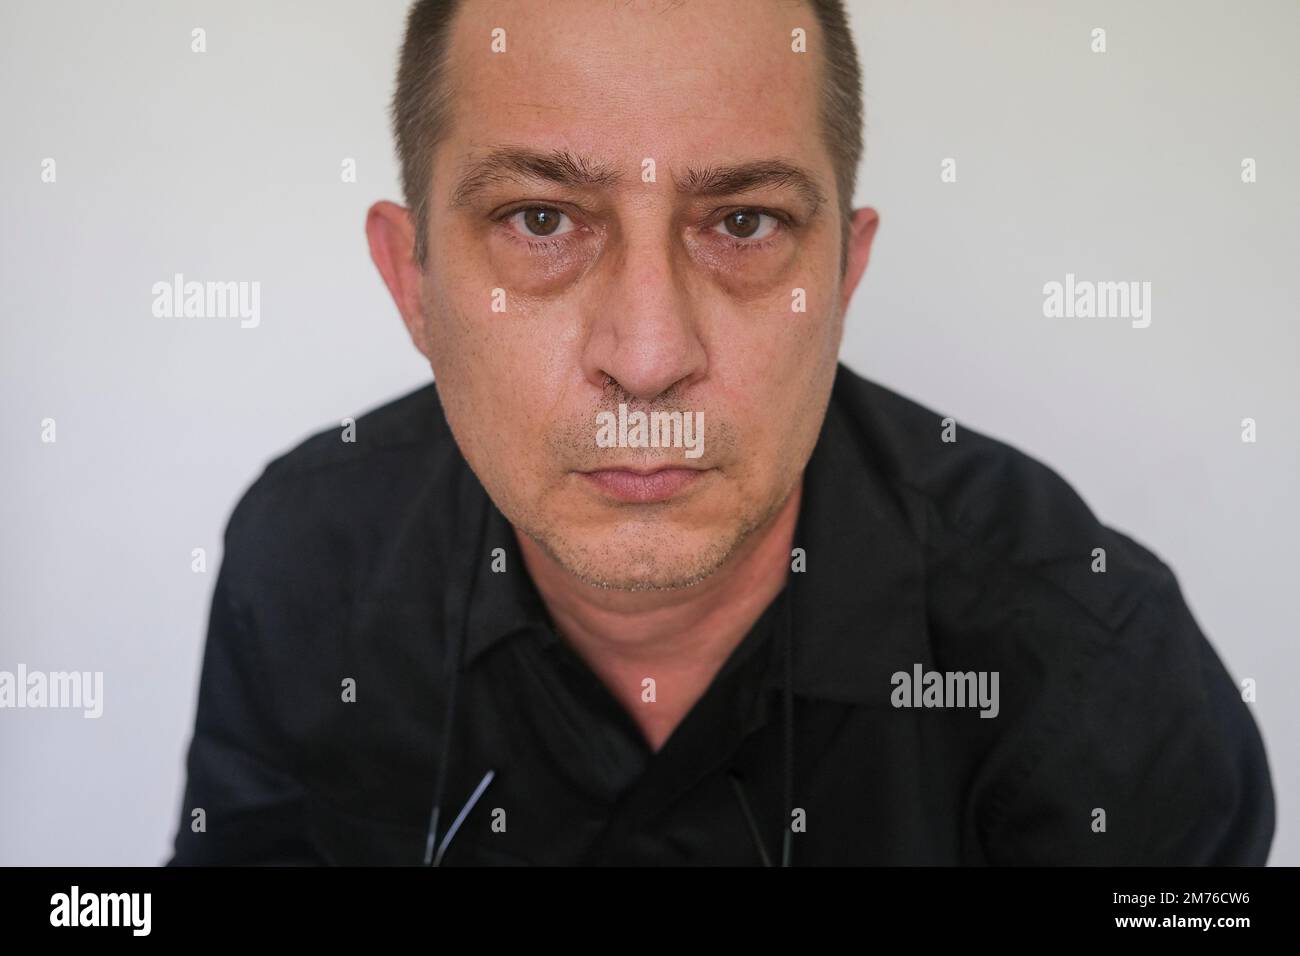 Gros plan portrait d'un homme caucasien avec des yeux aggeux regardant l'appareil photo, contre des sacs blancs pour les yeux de fond Banque D'Images